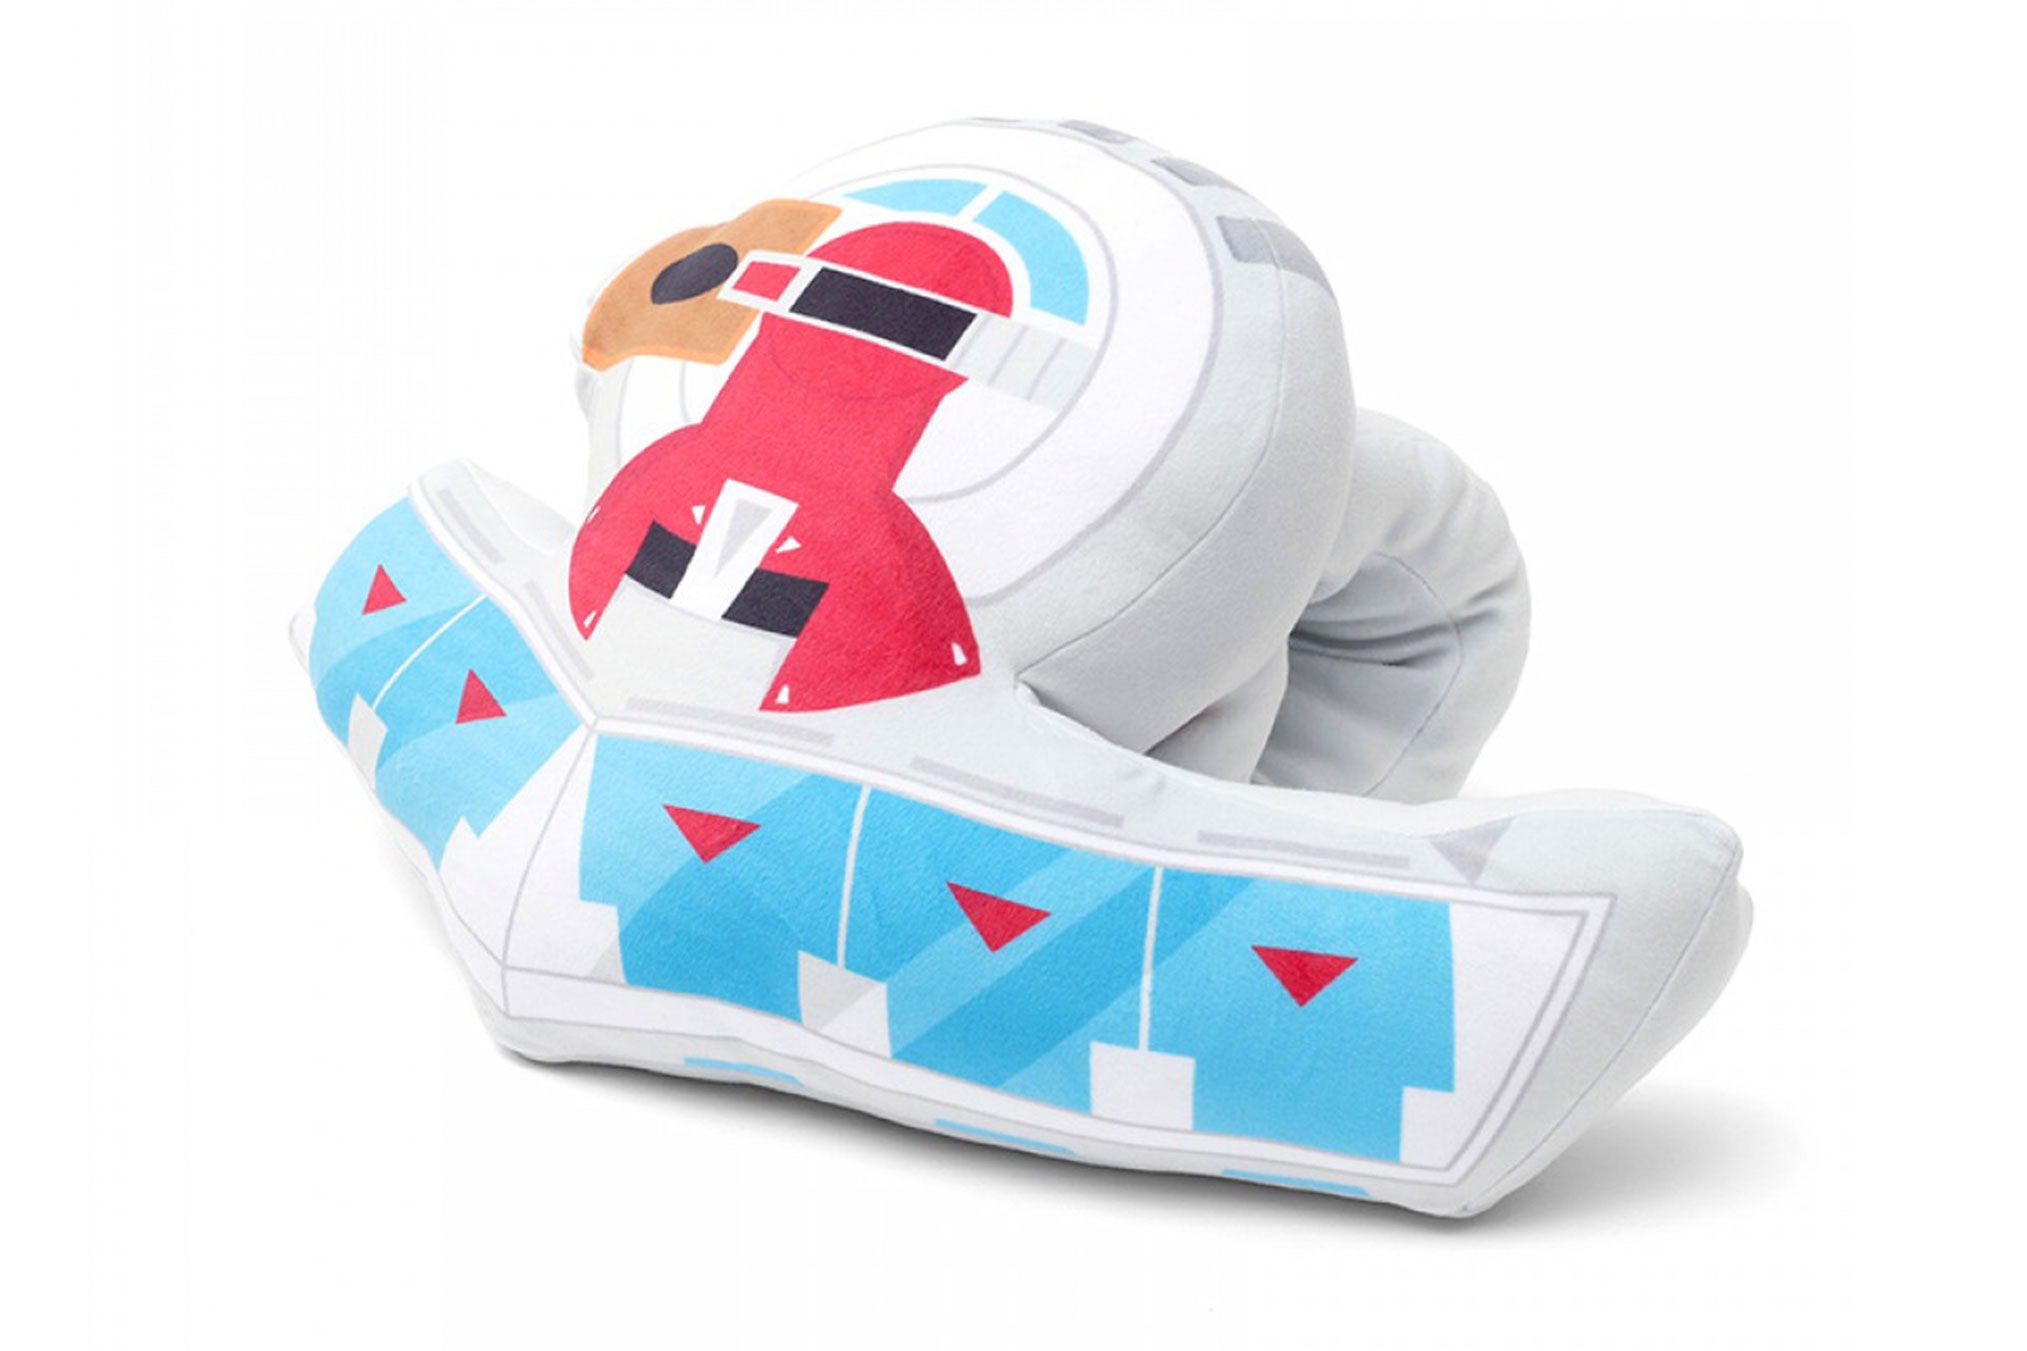 『遊☆戯☆王』のデュエルディスクを模したアームピローが登場 yu-gi-oh Duel disc nap pillow kaiba corporation store release  AXEL ENTERMEDIA konami pillows anime manga tcg 